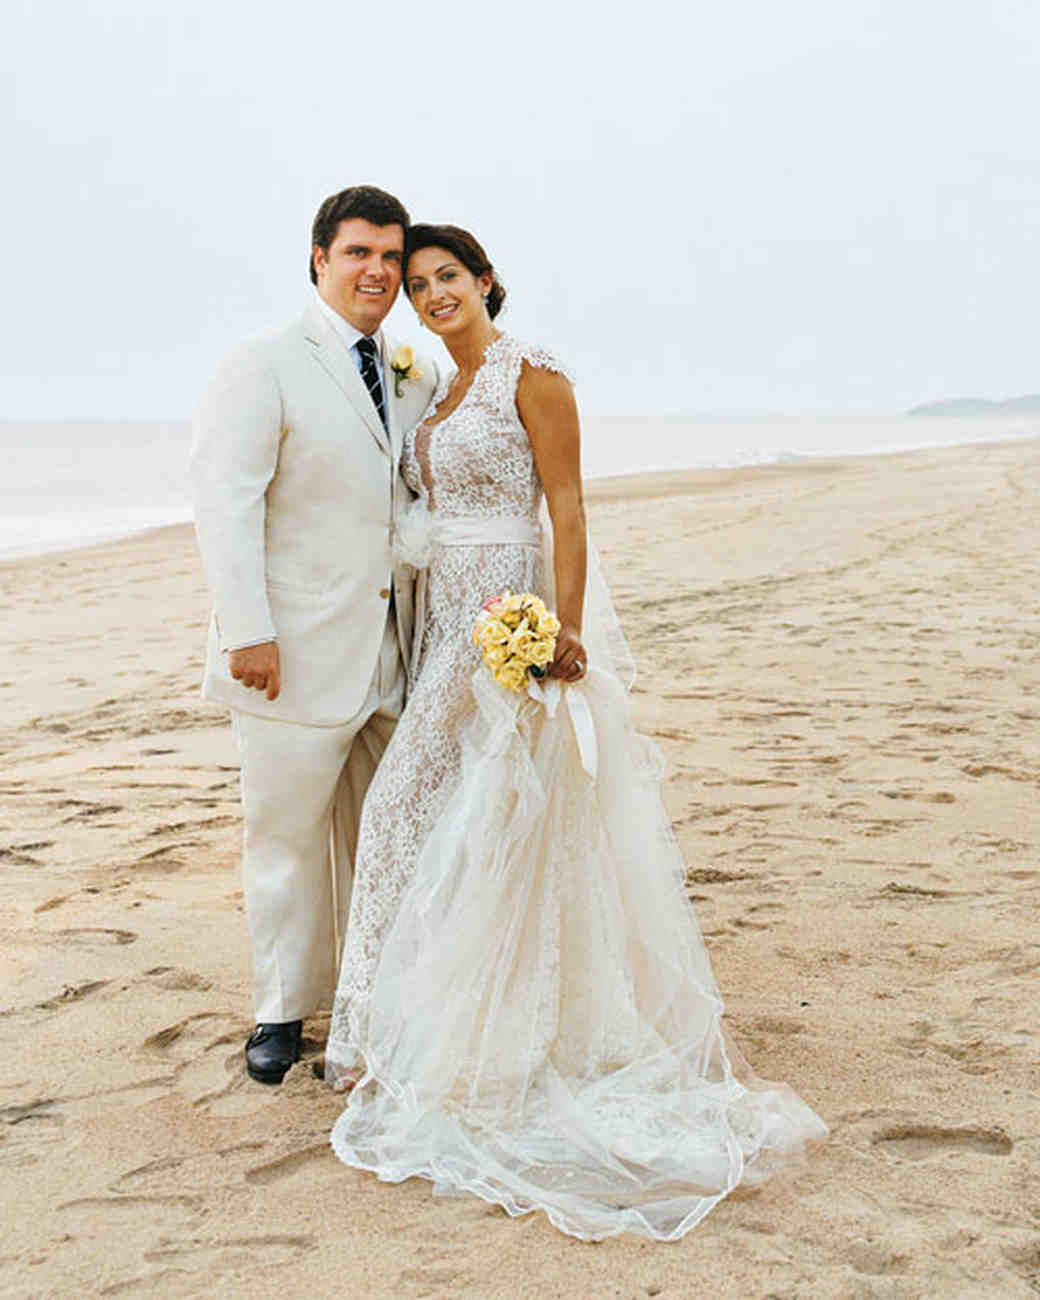 A Formal Destination Wedding On The Beach In Mexico Martha Stewart